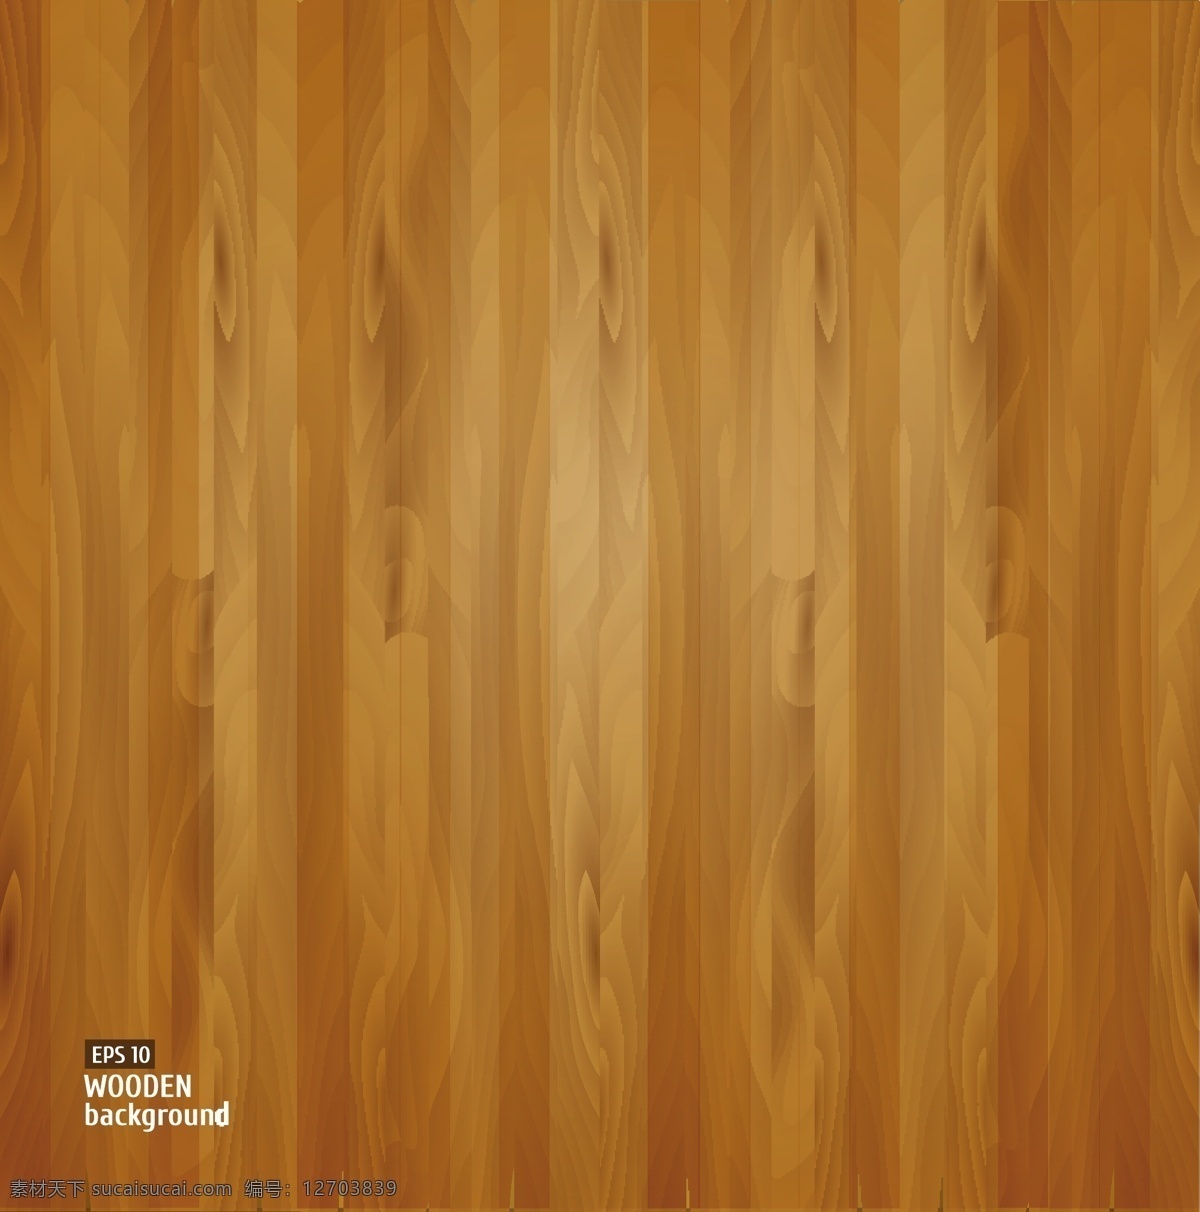 木制 背景 矢量 eps格式 地板 木板 木头 木纹 矢量素材 纹理 纸板 矢量图